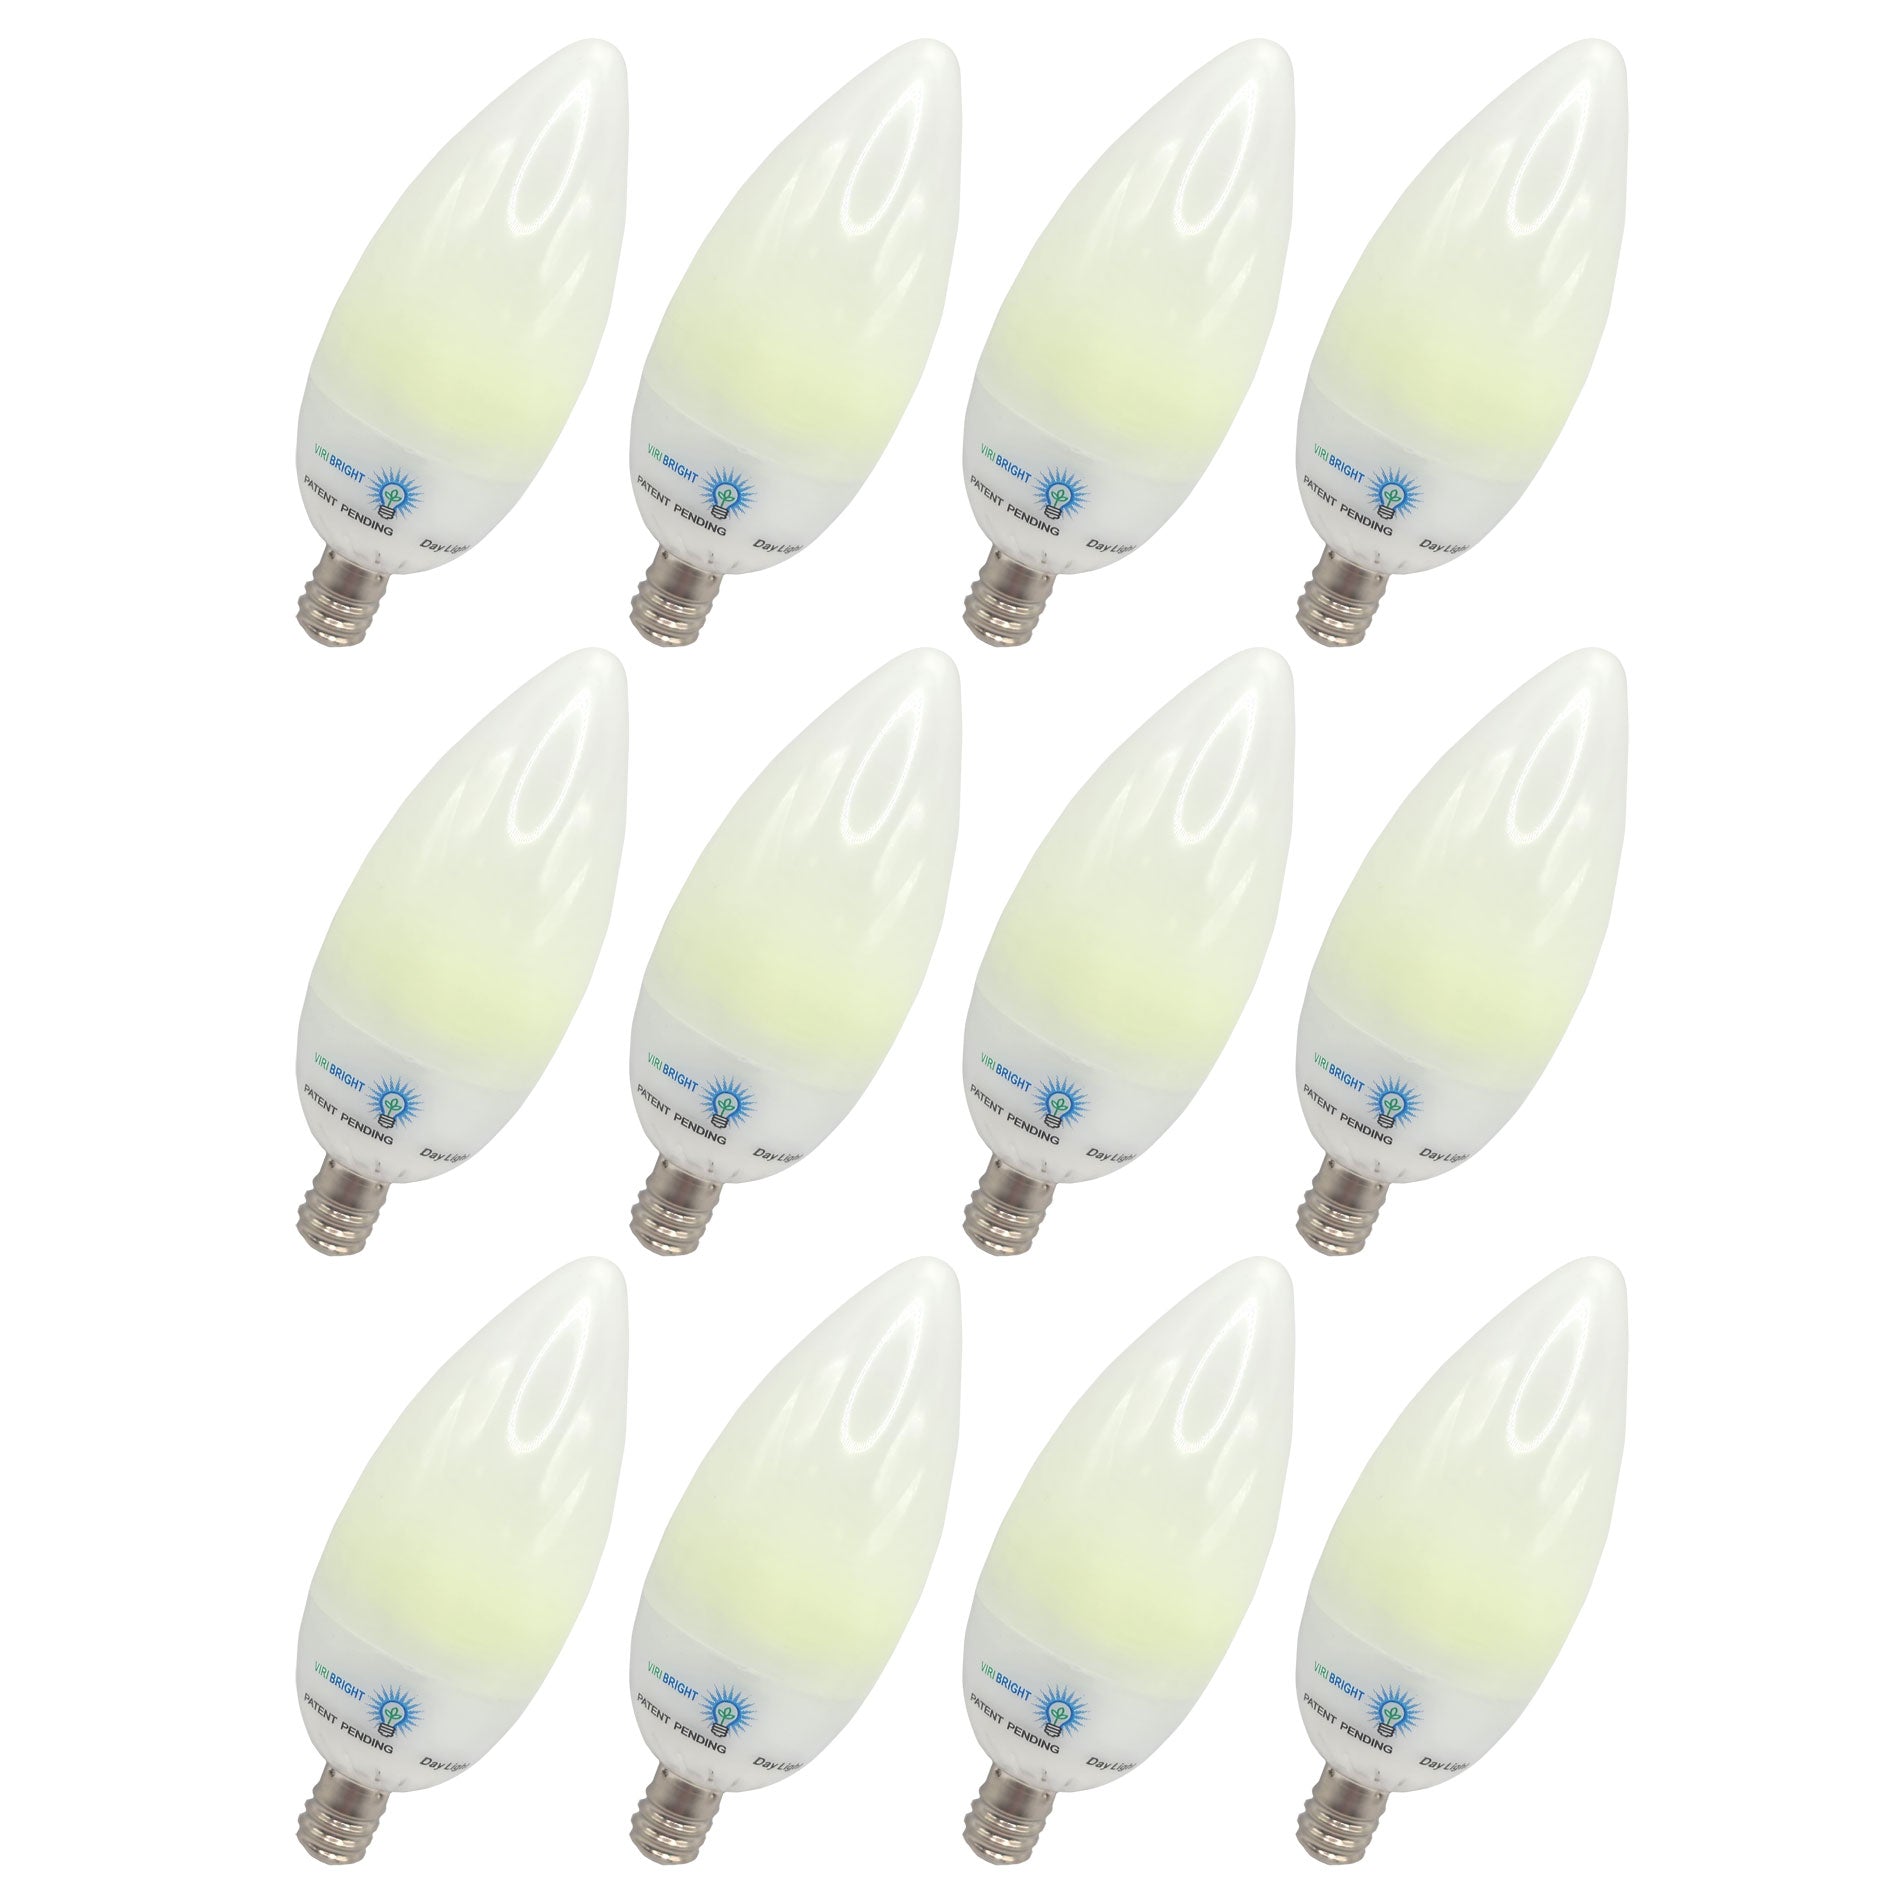 Chandelier Candelabra 22-Watt Equivalent B11 E12 LED Frosted LED Light Bulbs